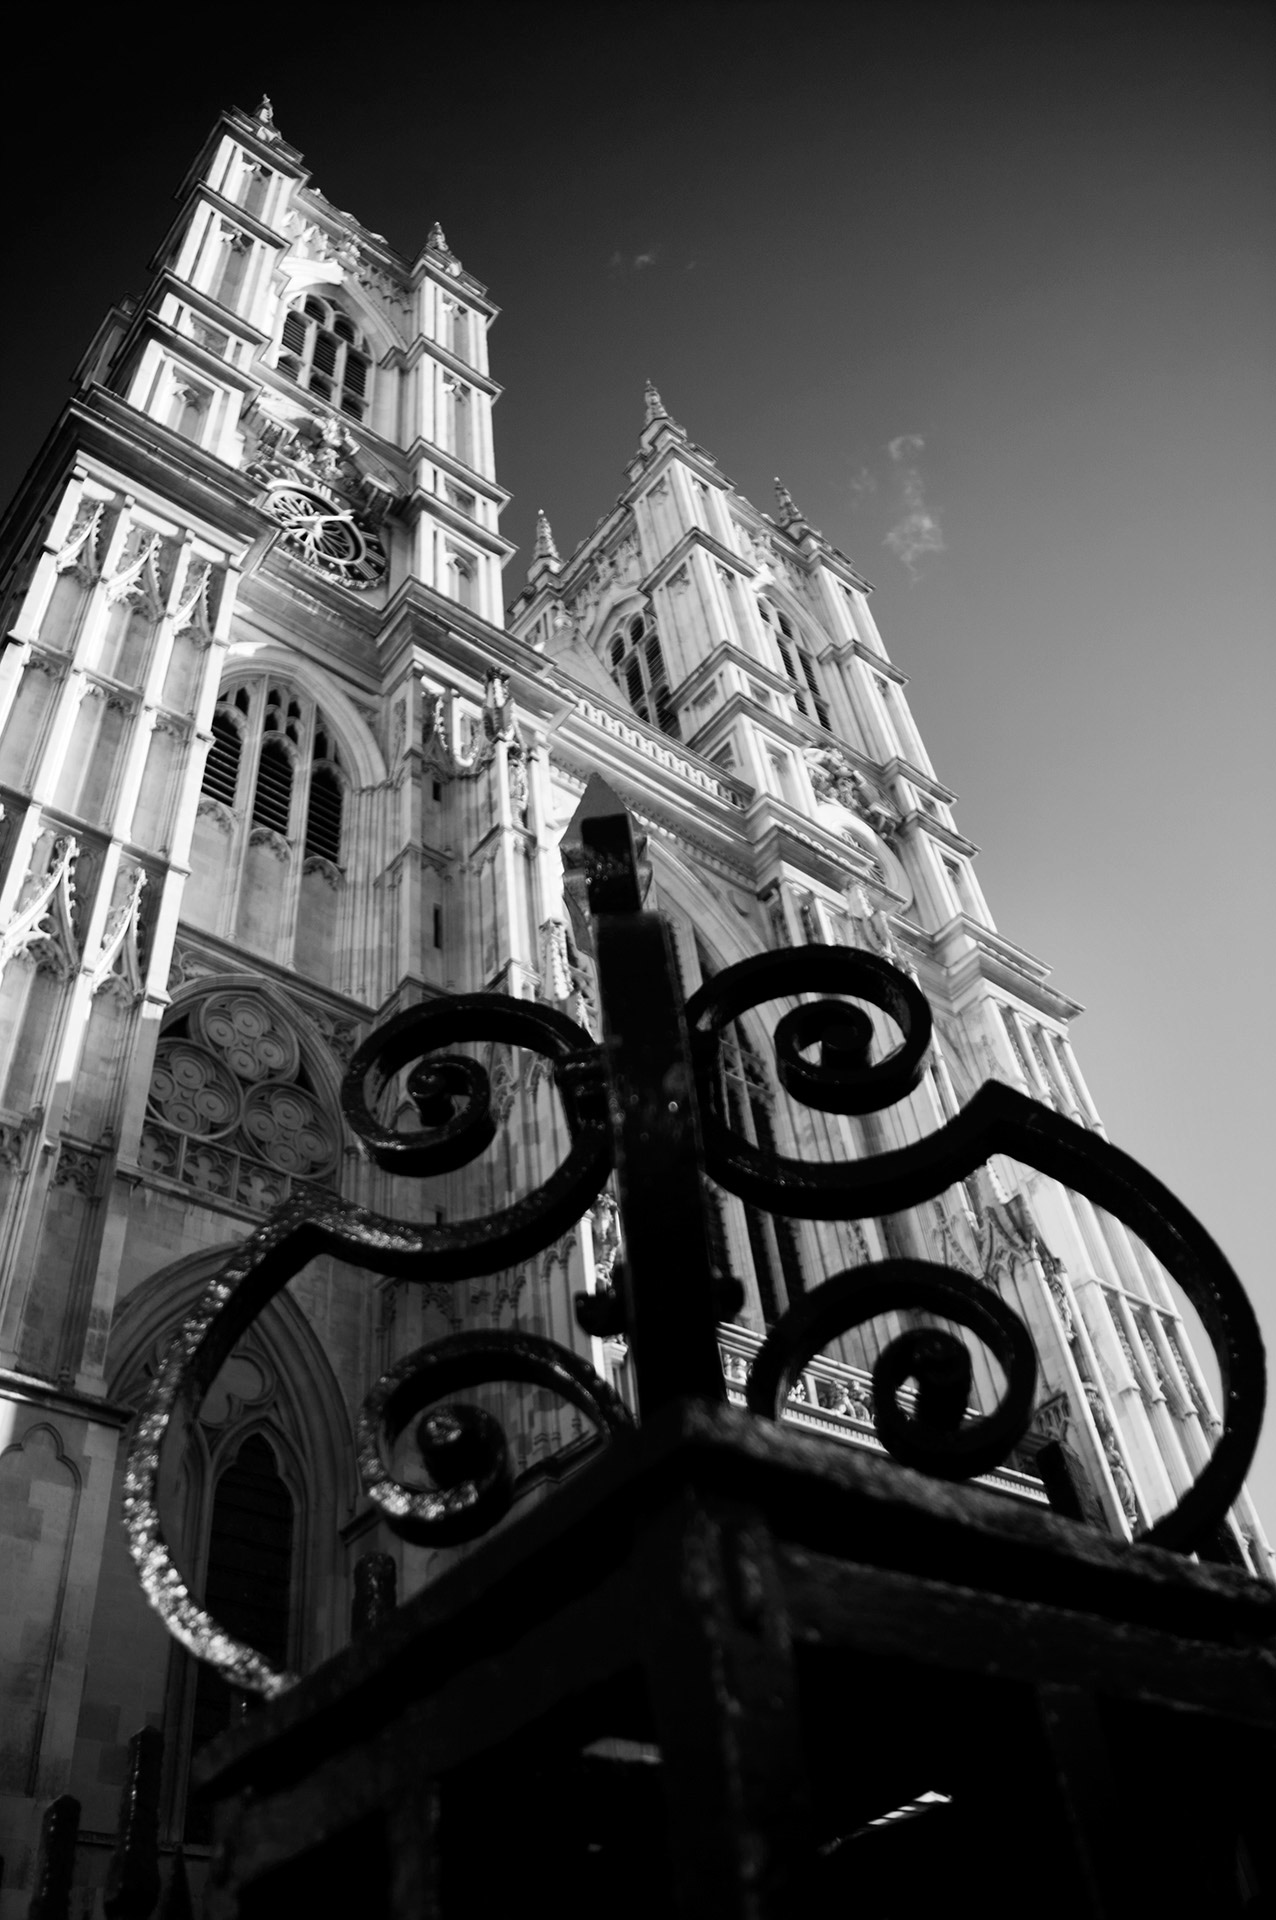 architektura gotycka, średniowiecze, gotyk, Westminster, Londyn, podróże, podróże po Europie, fotografia Monika Turska